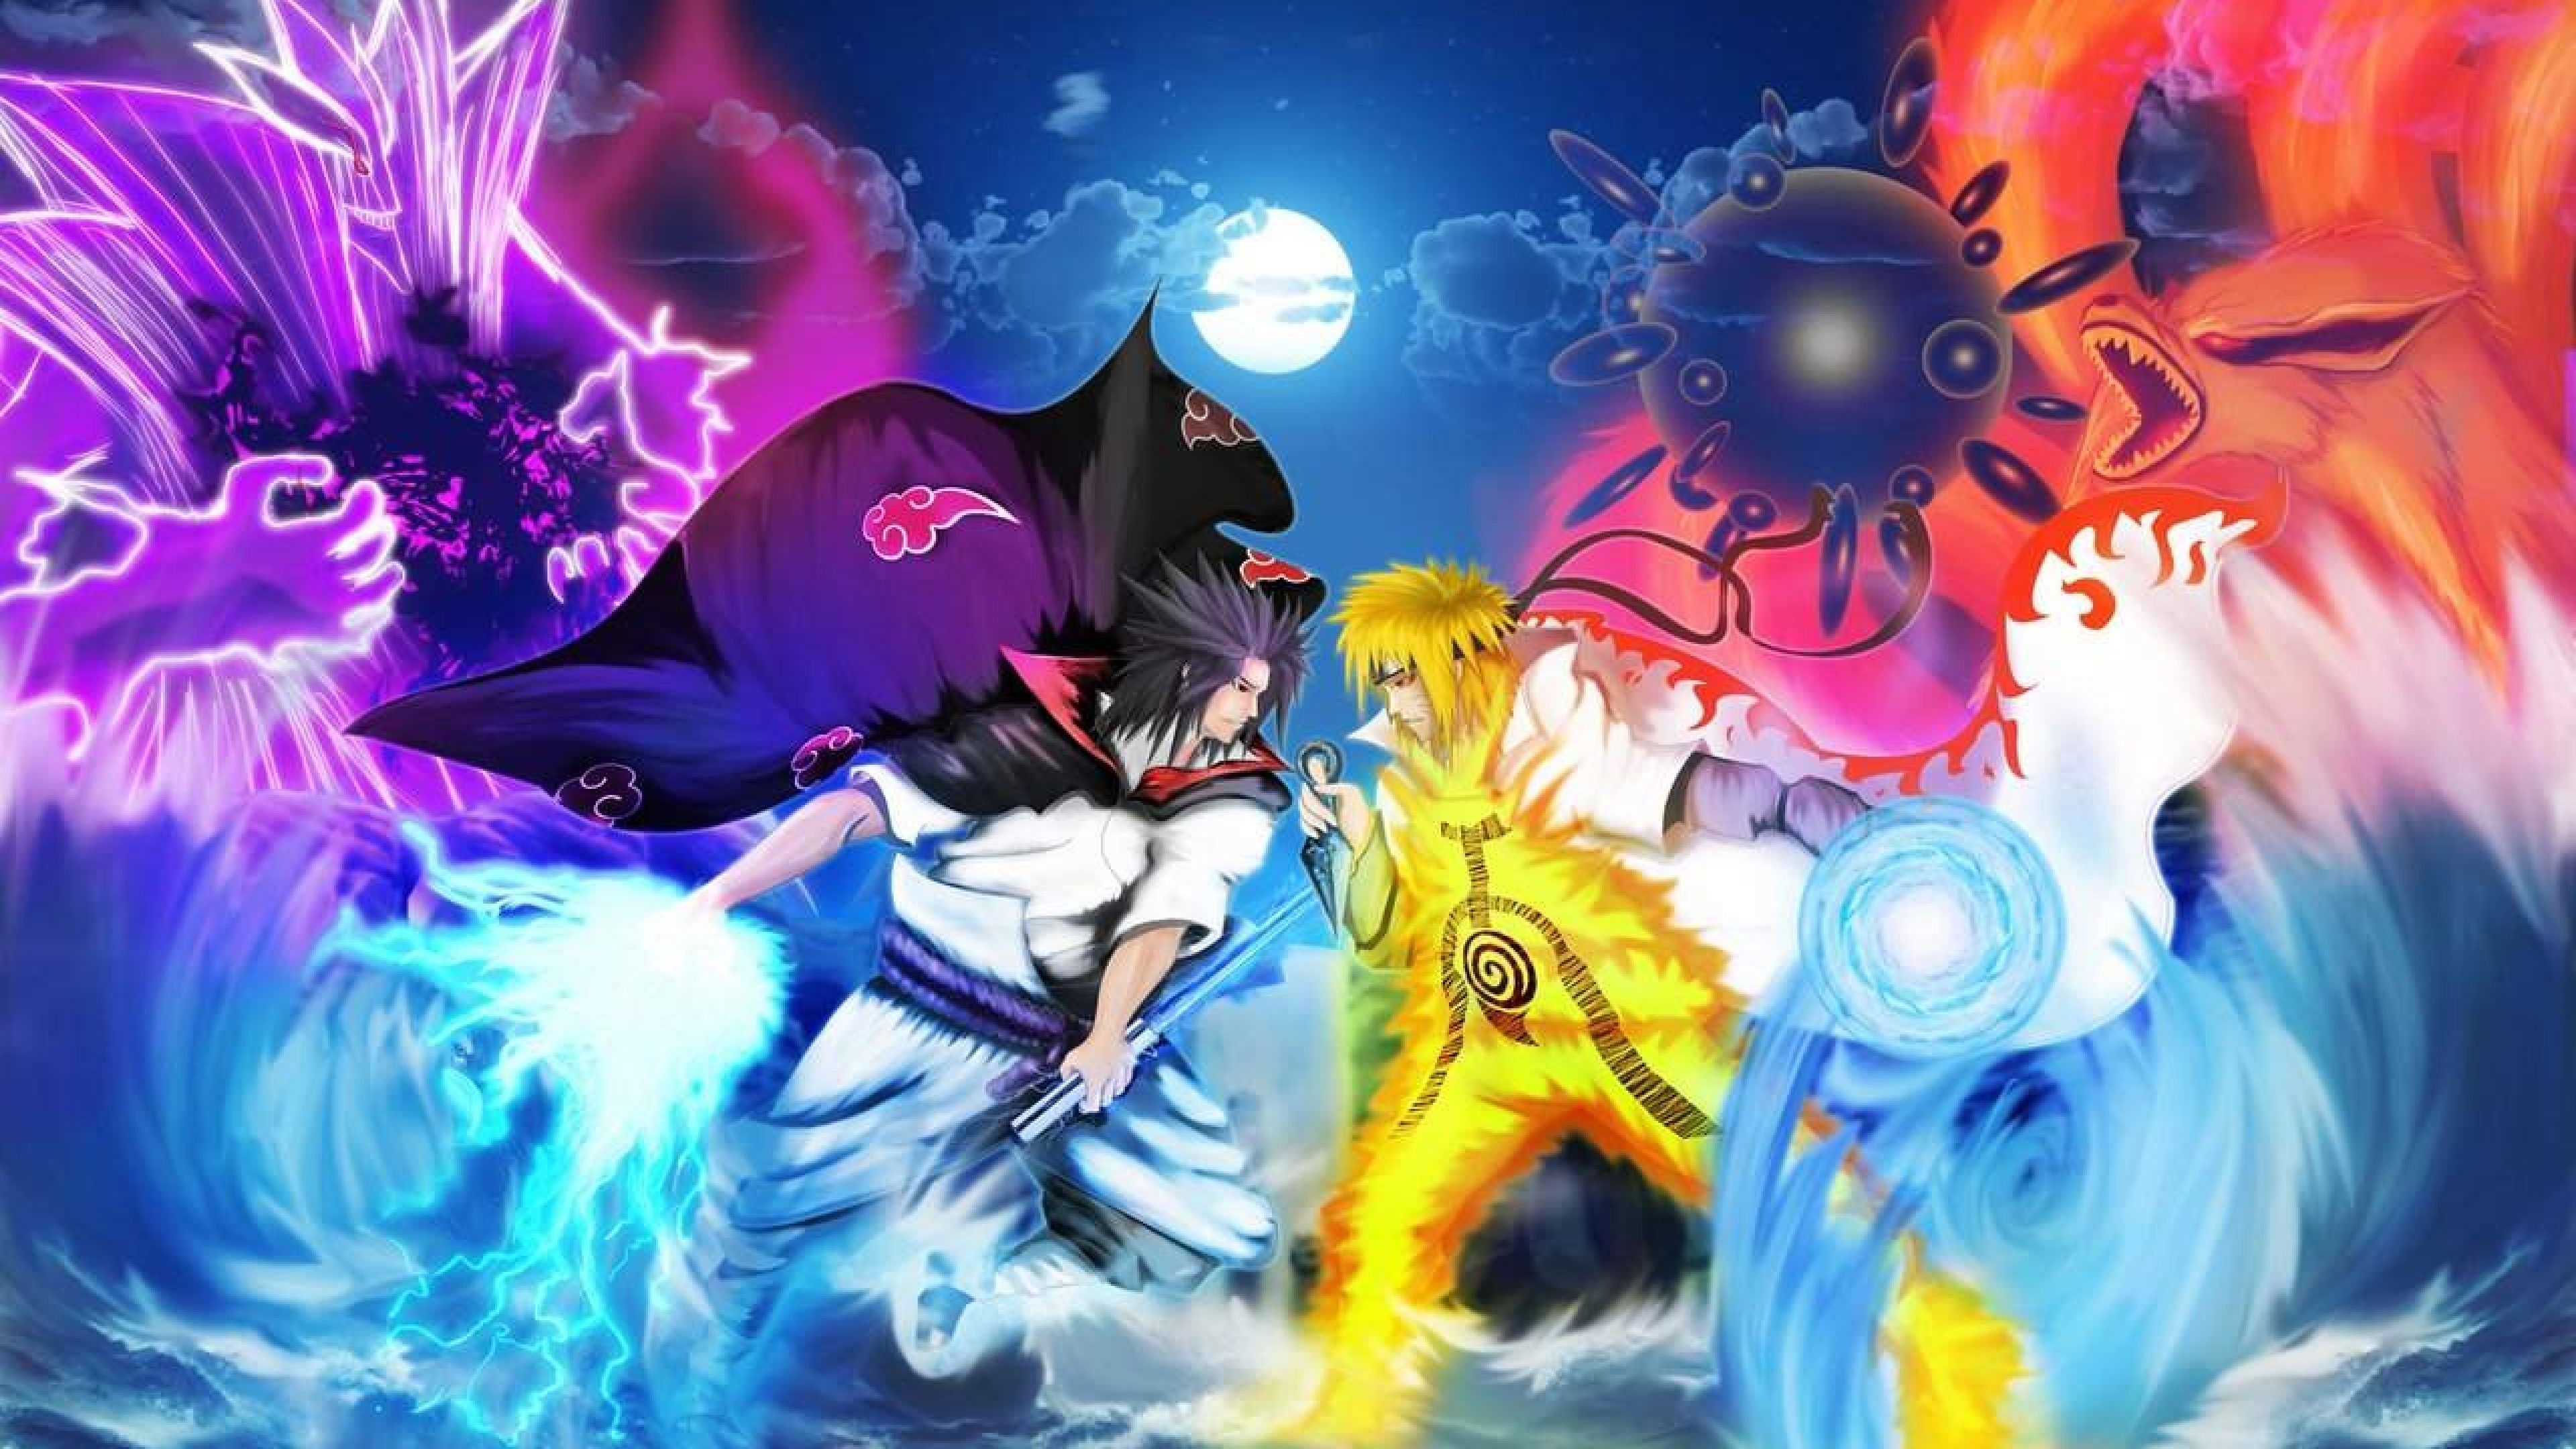 NARUTO vs SASUKE. Naruto and sasuke wallpaper, Anime wallpaper, Naruto vs sasuke